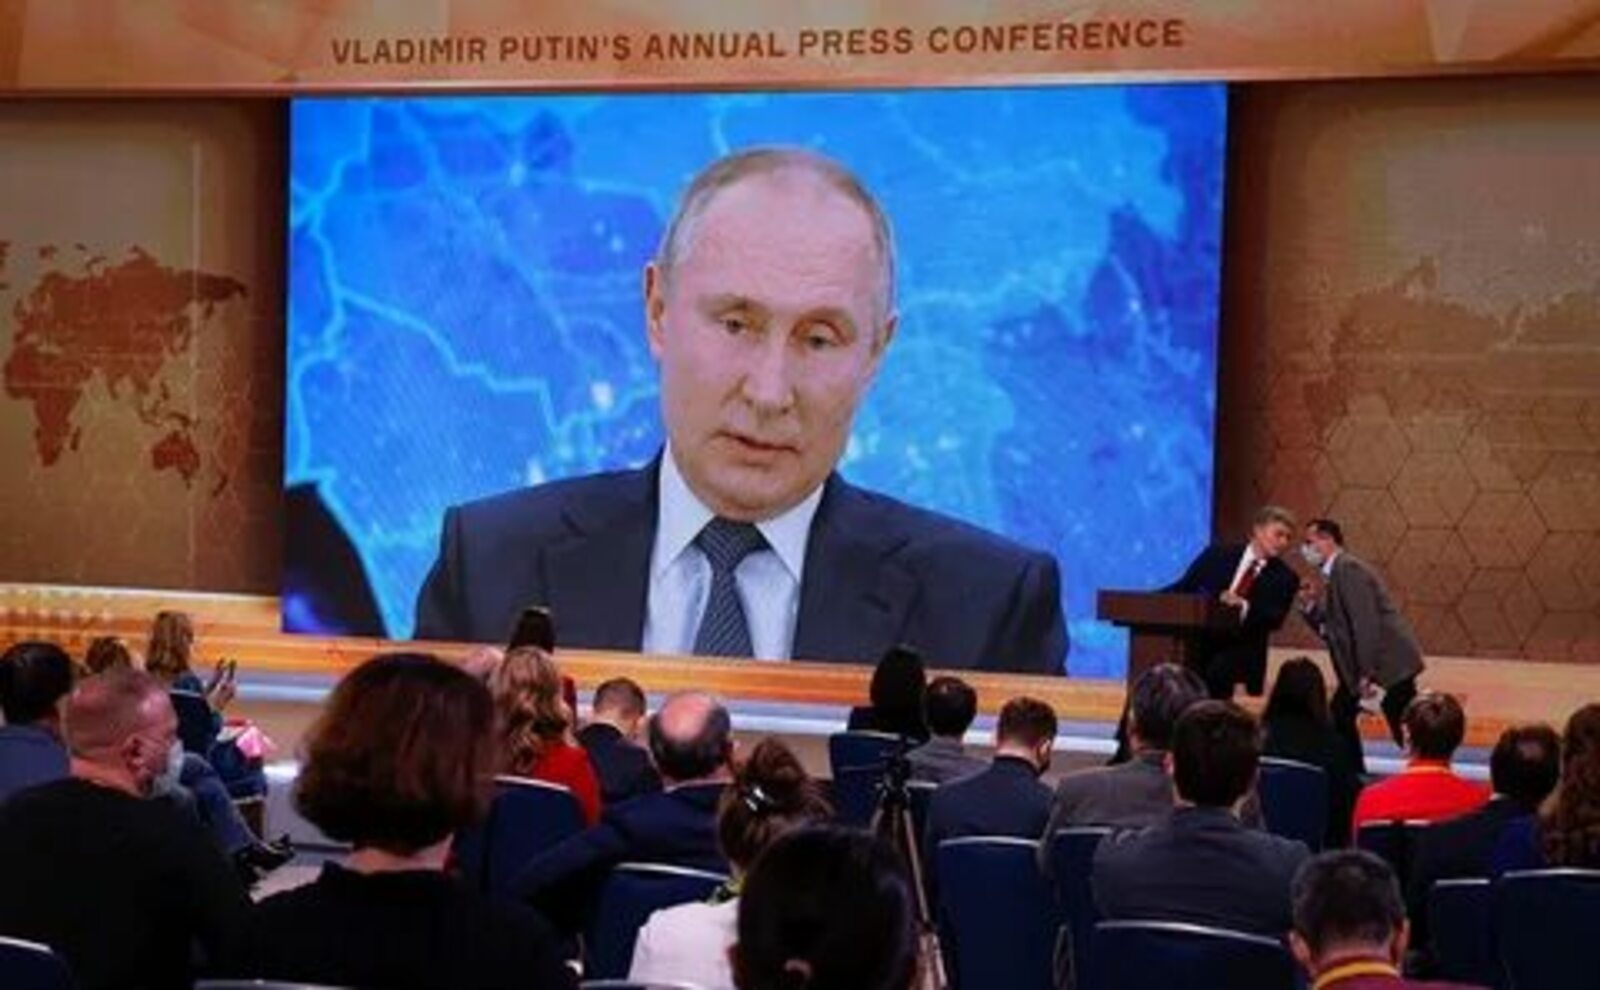 Пресс-конференция Путина состоится до нового года